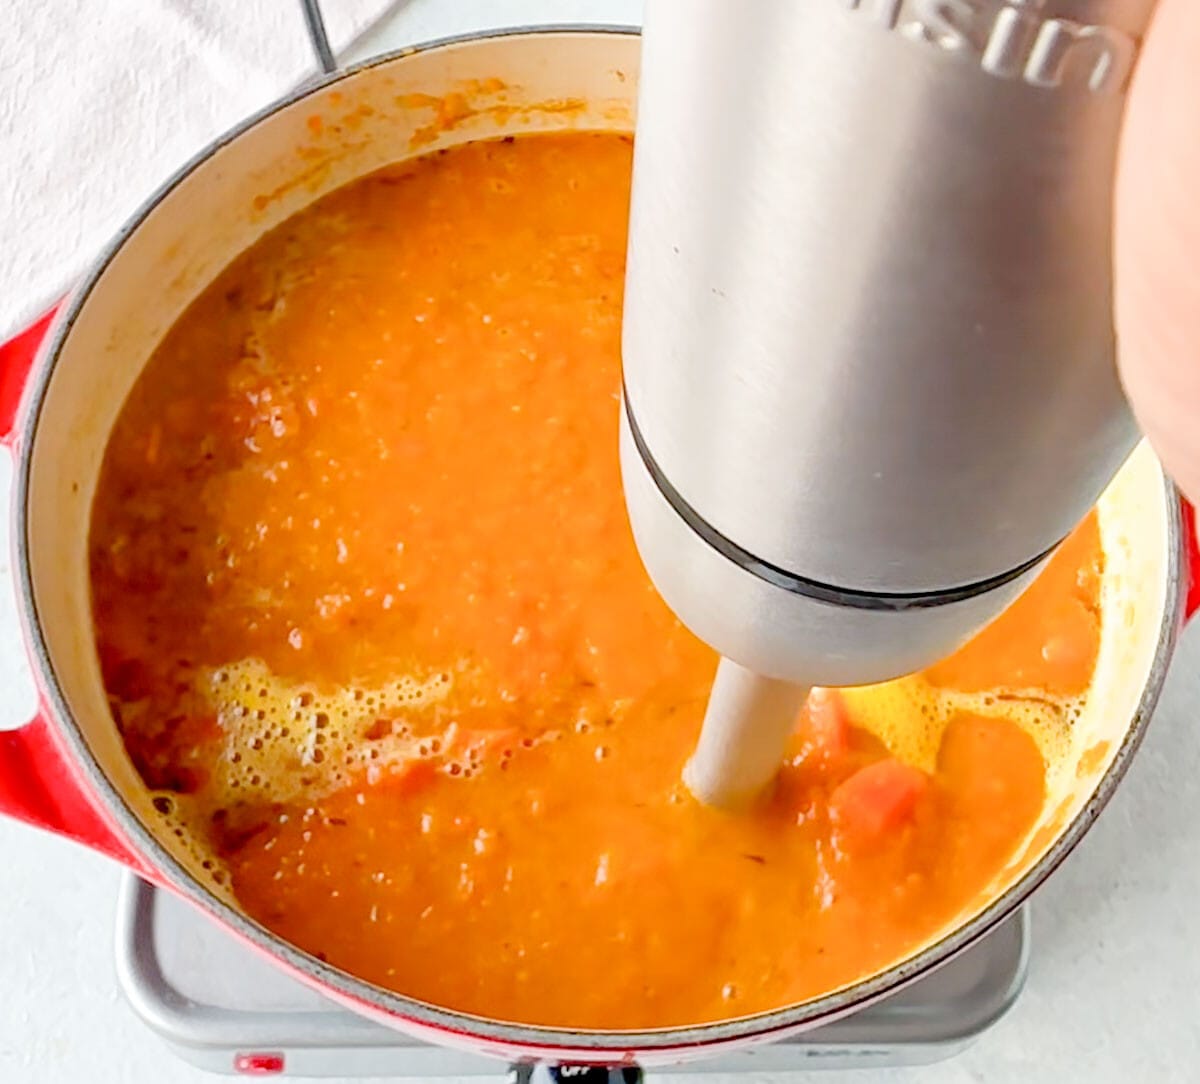 Blending the Pumpkin Carrot Soup with an immersion blender.